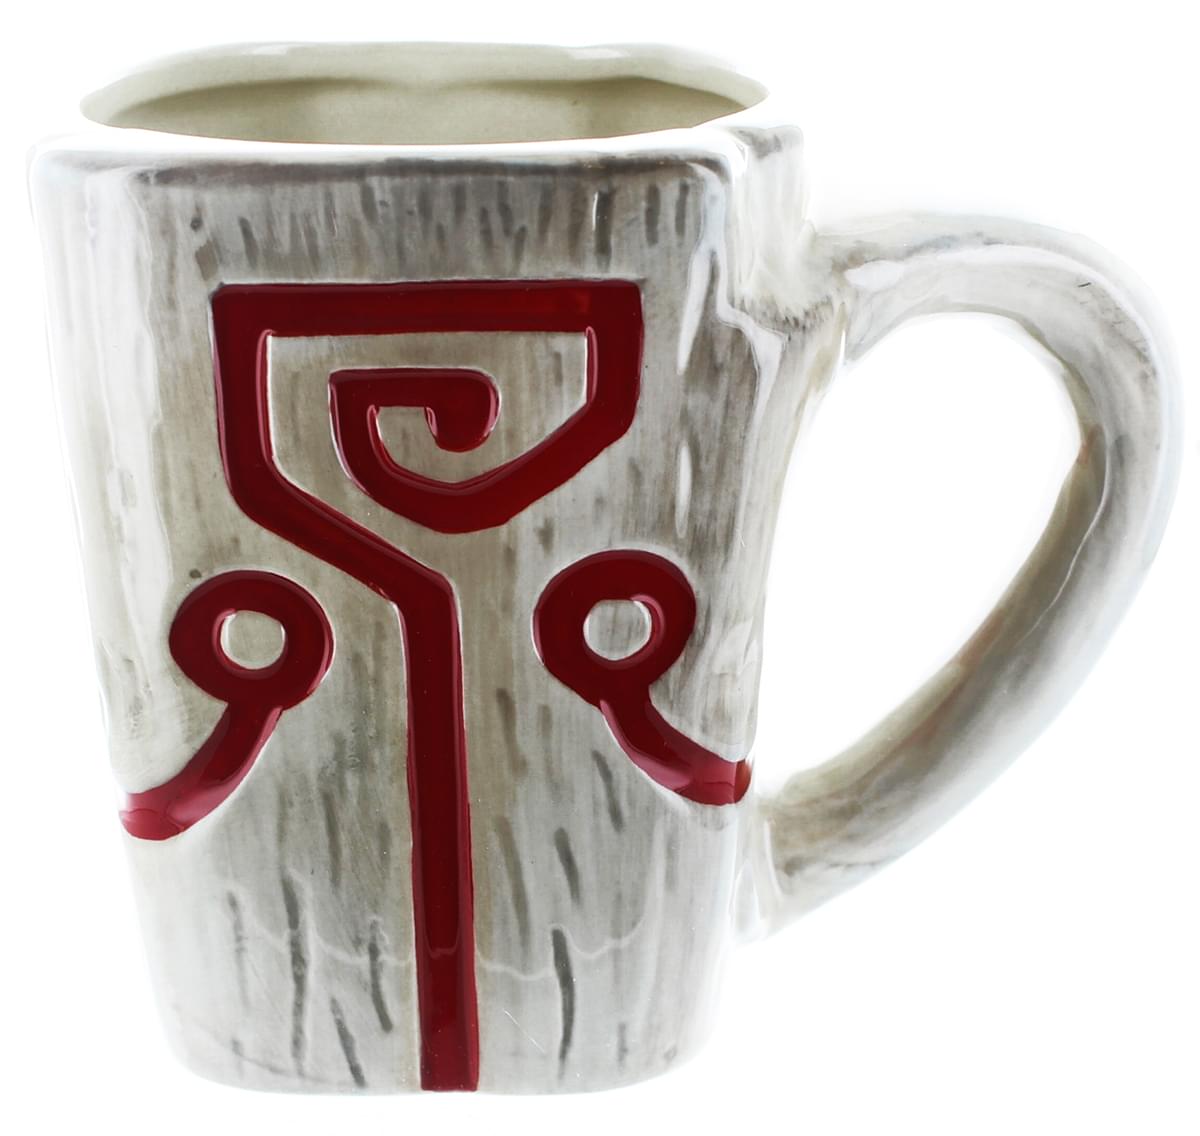 DOTA 2 "Muggernaut" Ceramic Mug - Officially Licensed